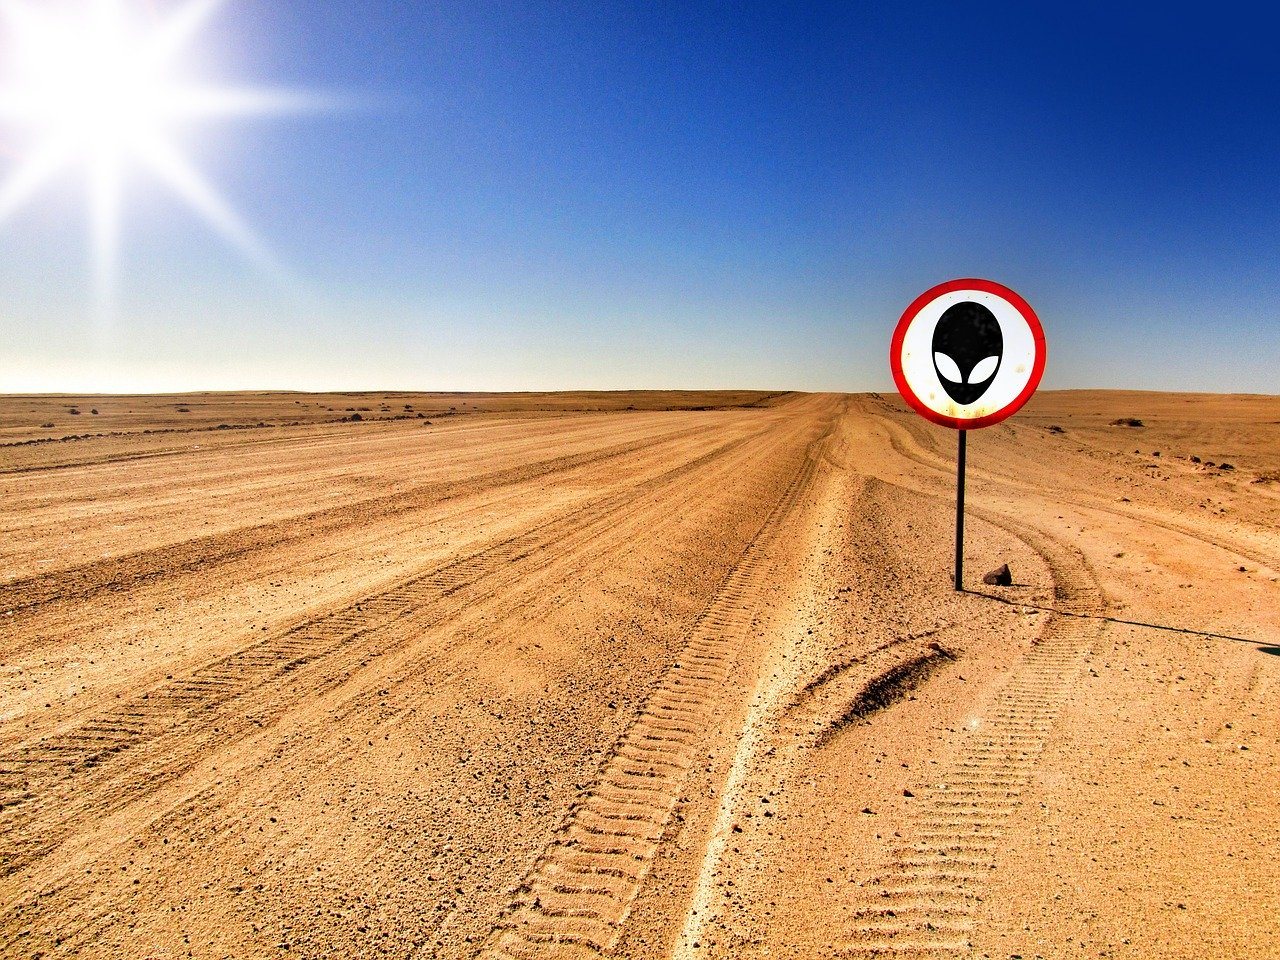 Wüste, Himmel, Schild mit Alien